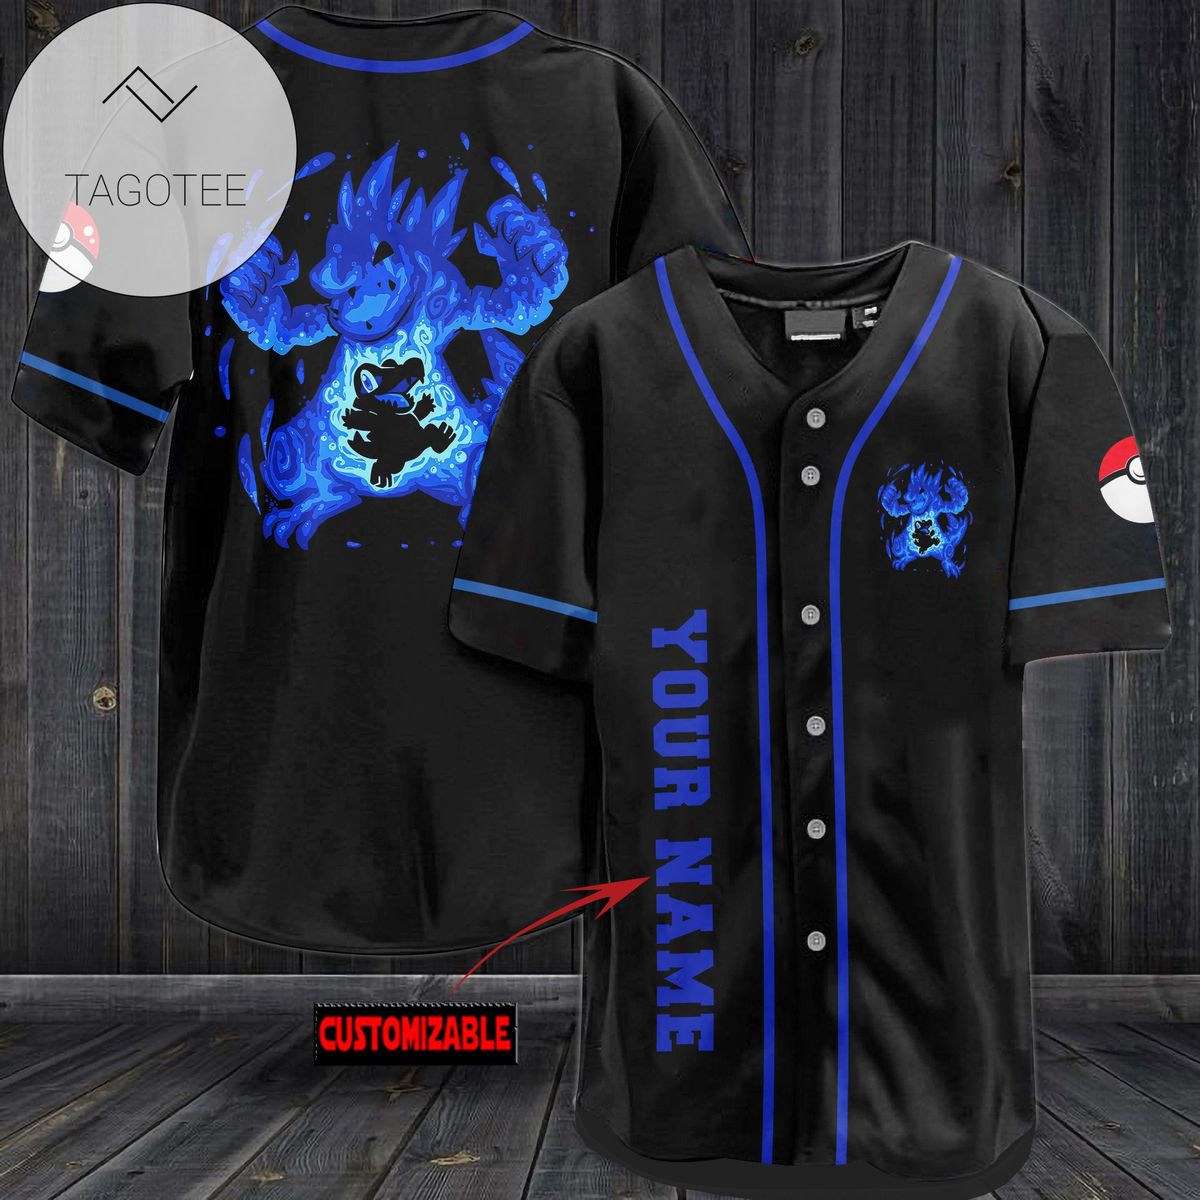 Personalized Waninoko Baseball Jersey - Black